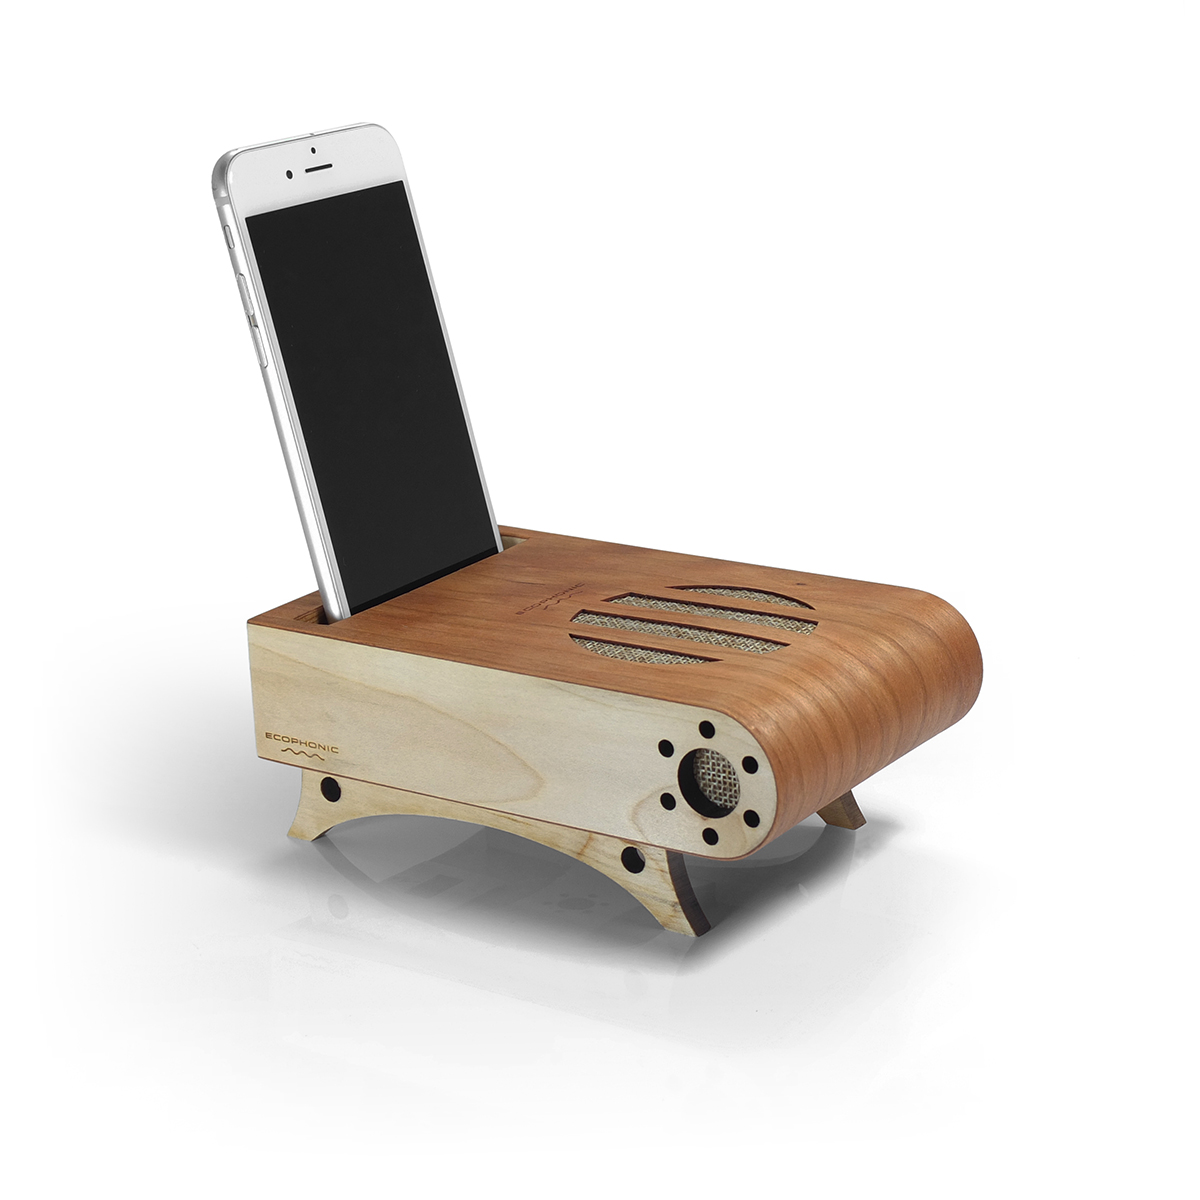 Amplificador de sonido aprovecha las características acústicas de la madera  para potenciar el volumen de un smartphone